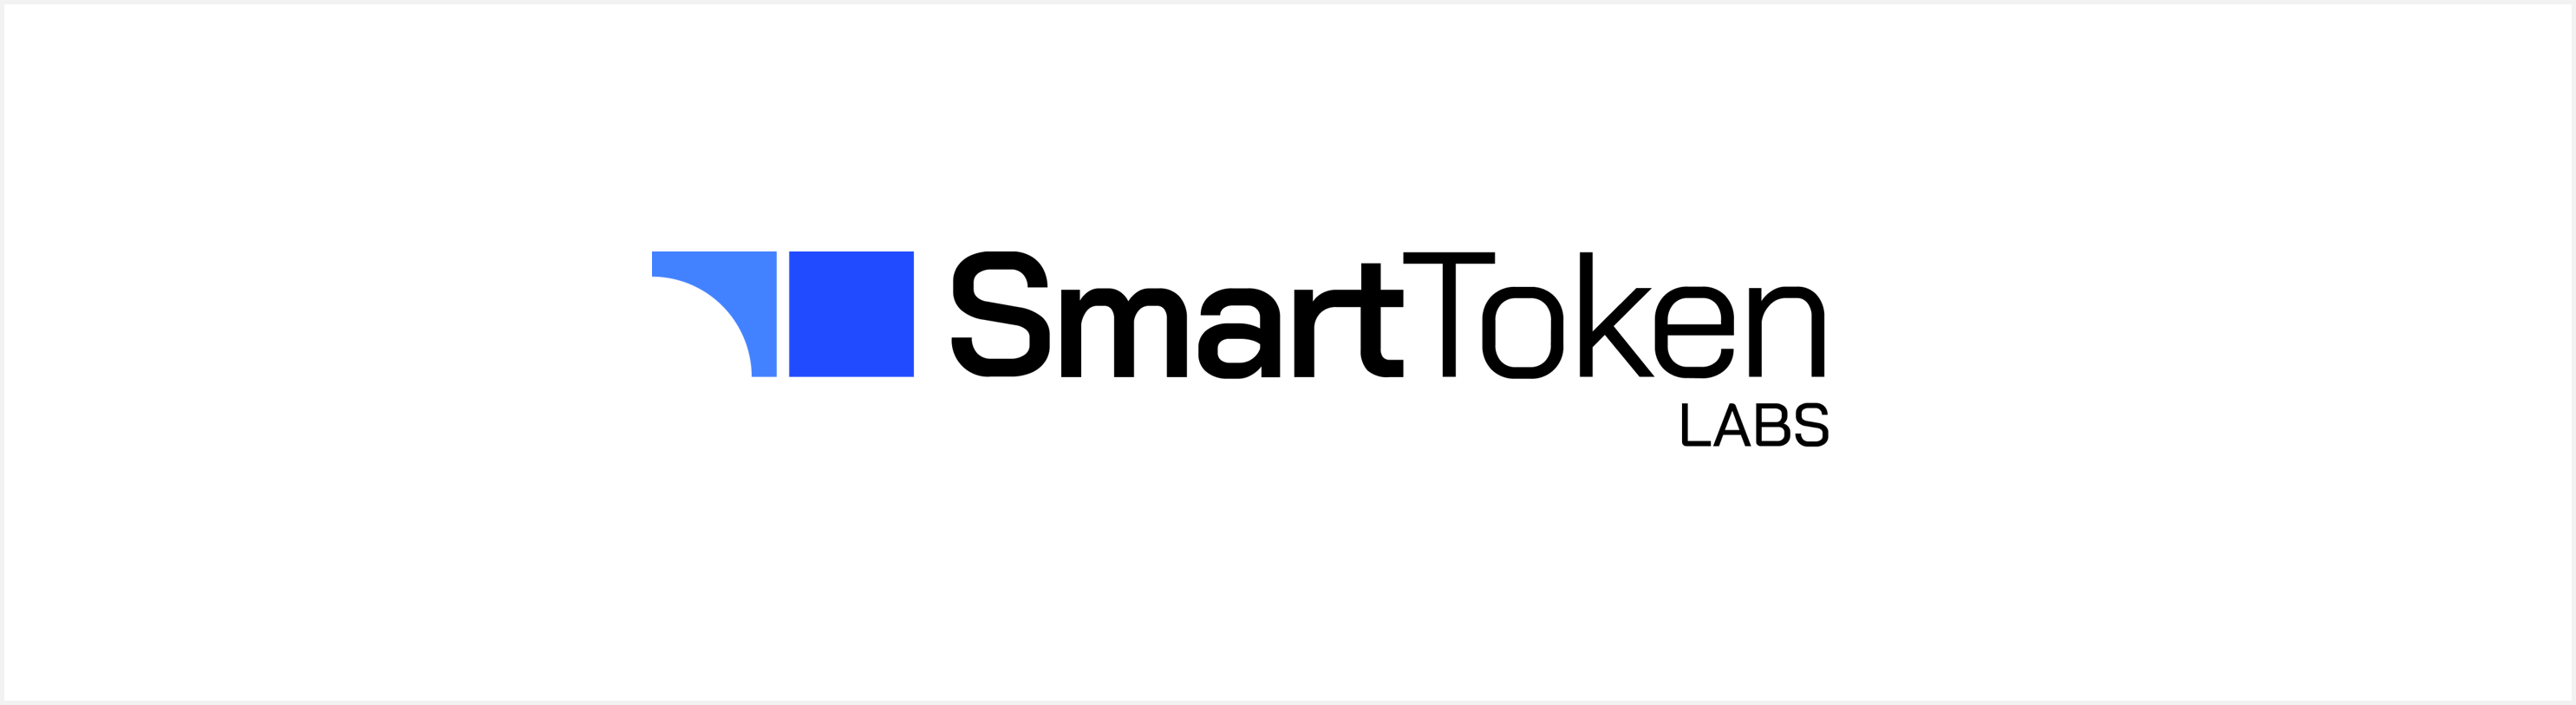 SmartToken Labs